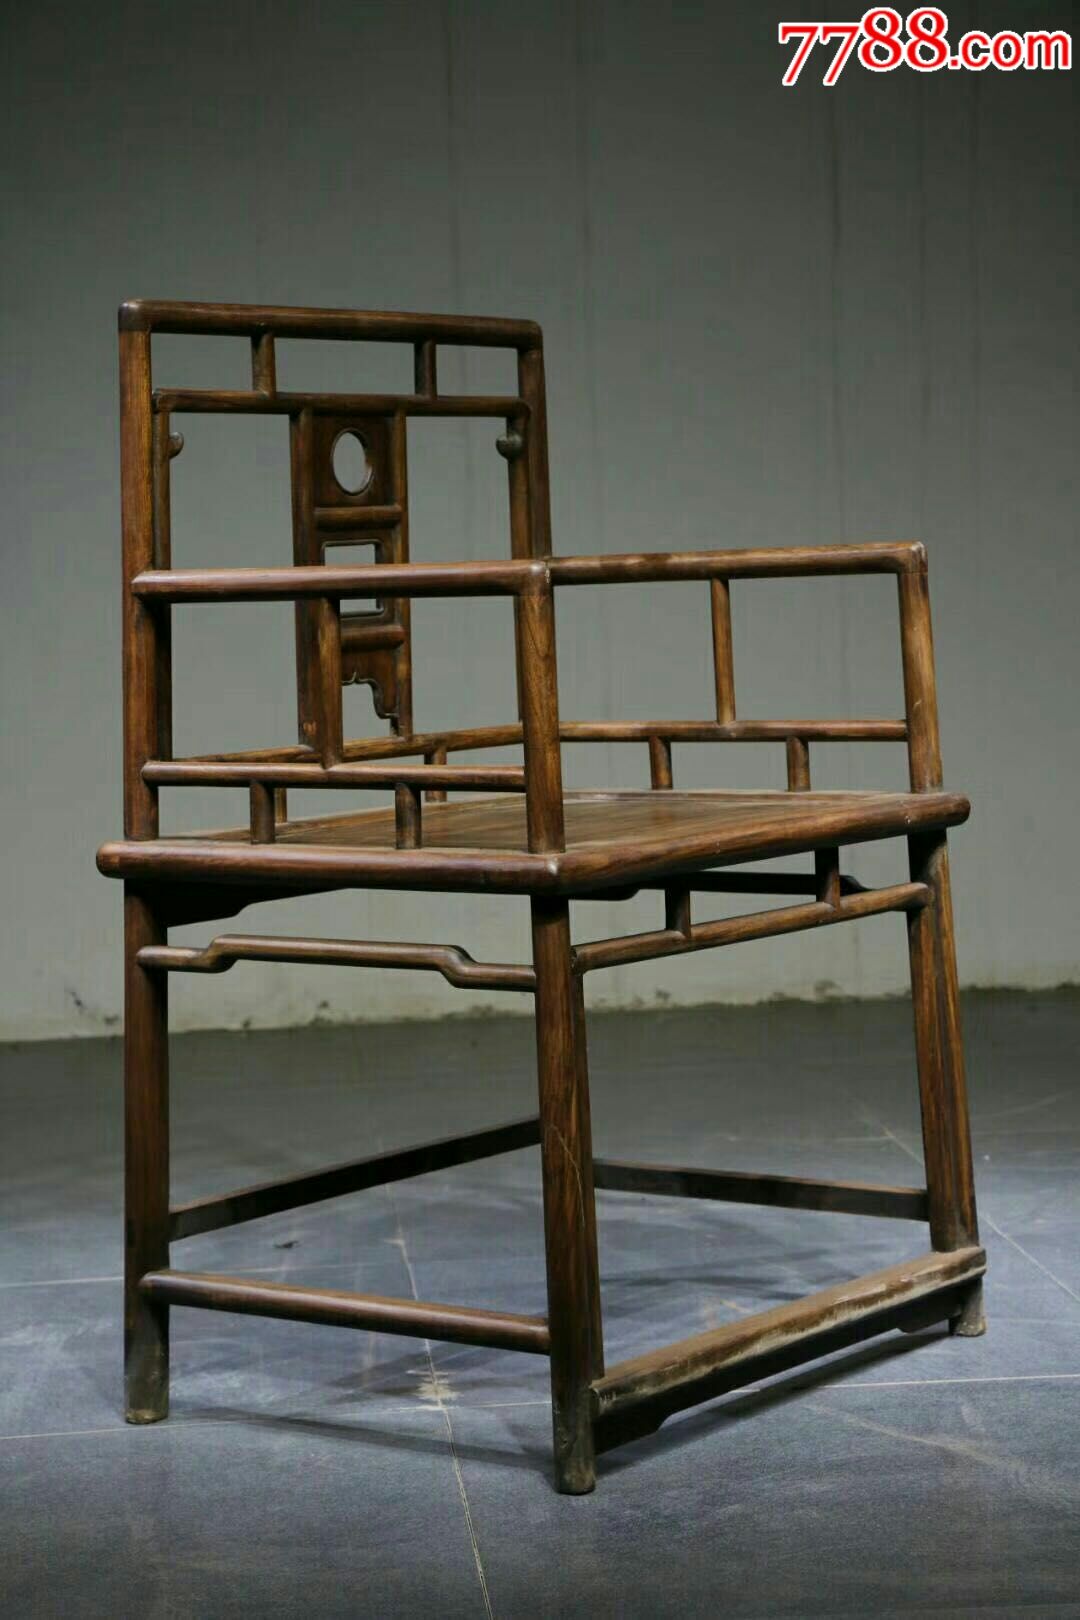 典藏品,大叶黄花梨太师椅尺寸,椅子单个尺寸,长62宽48高92,茶几长43宽